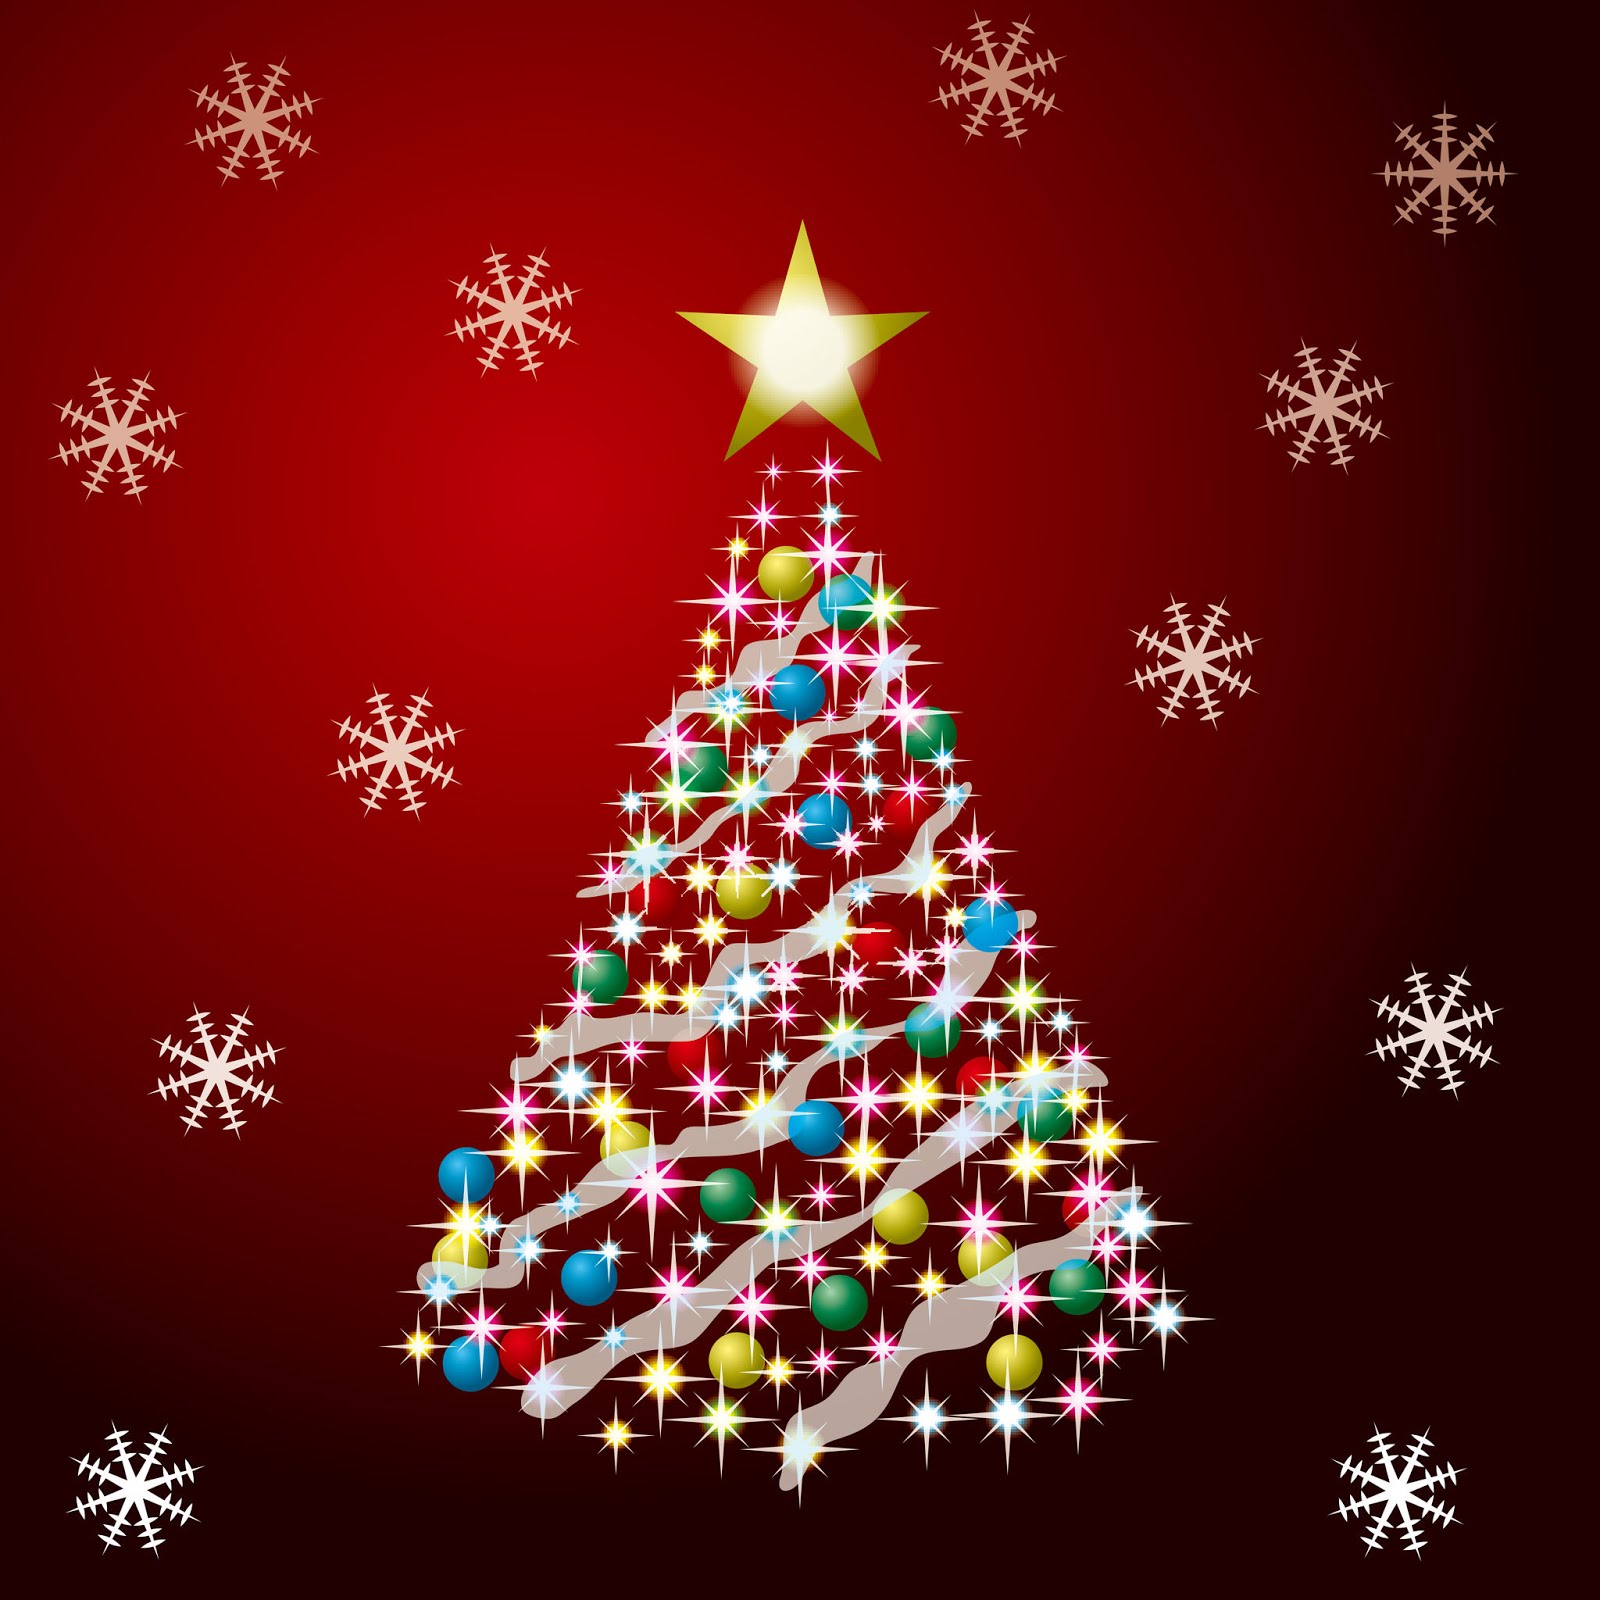 Banco de Imágenes Gratis: Ilustración de un arbolito de Navidad con esferas  de colores